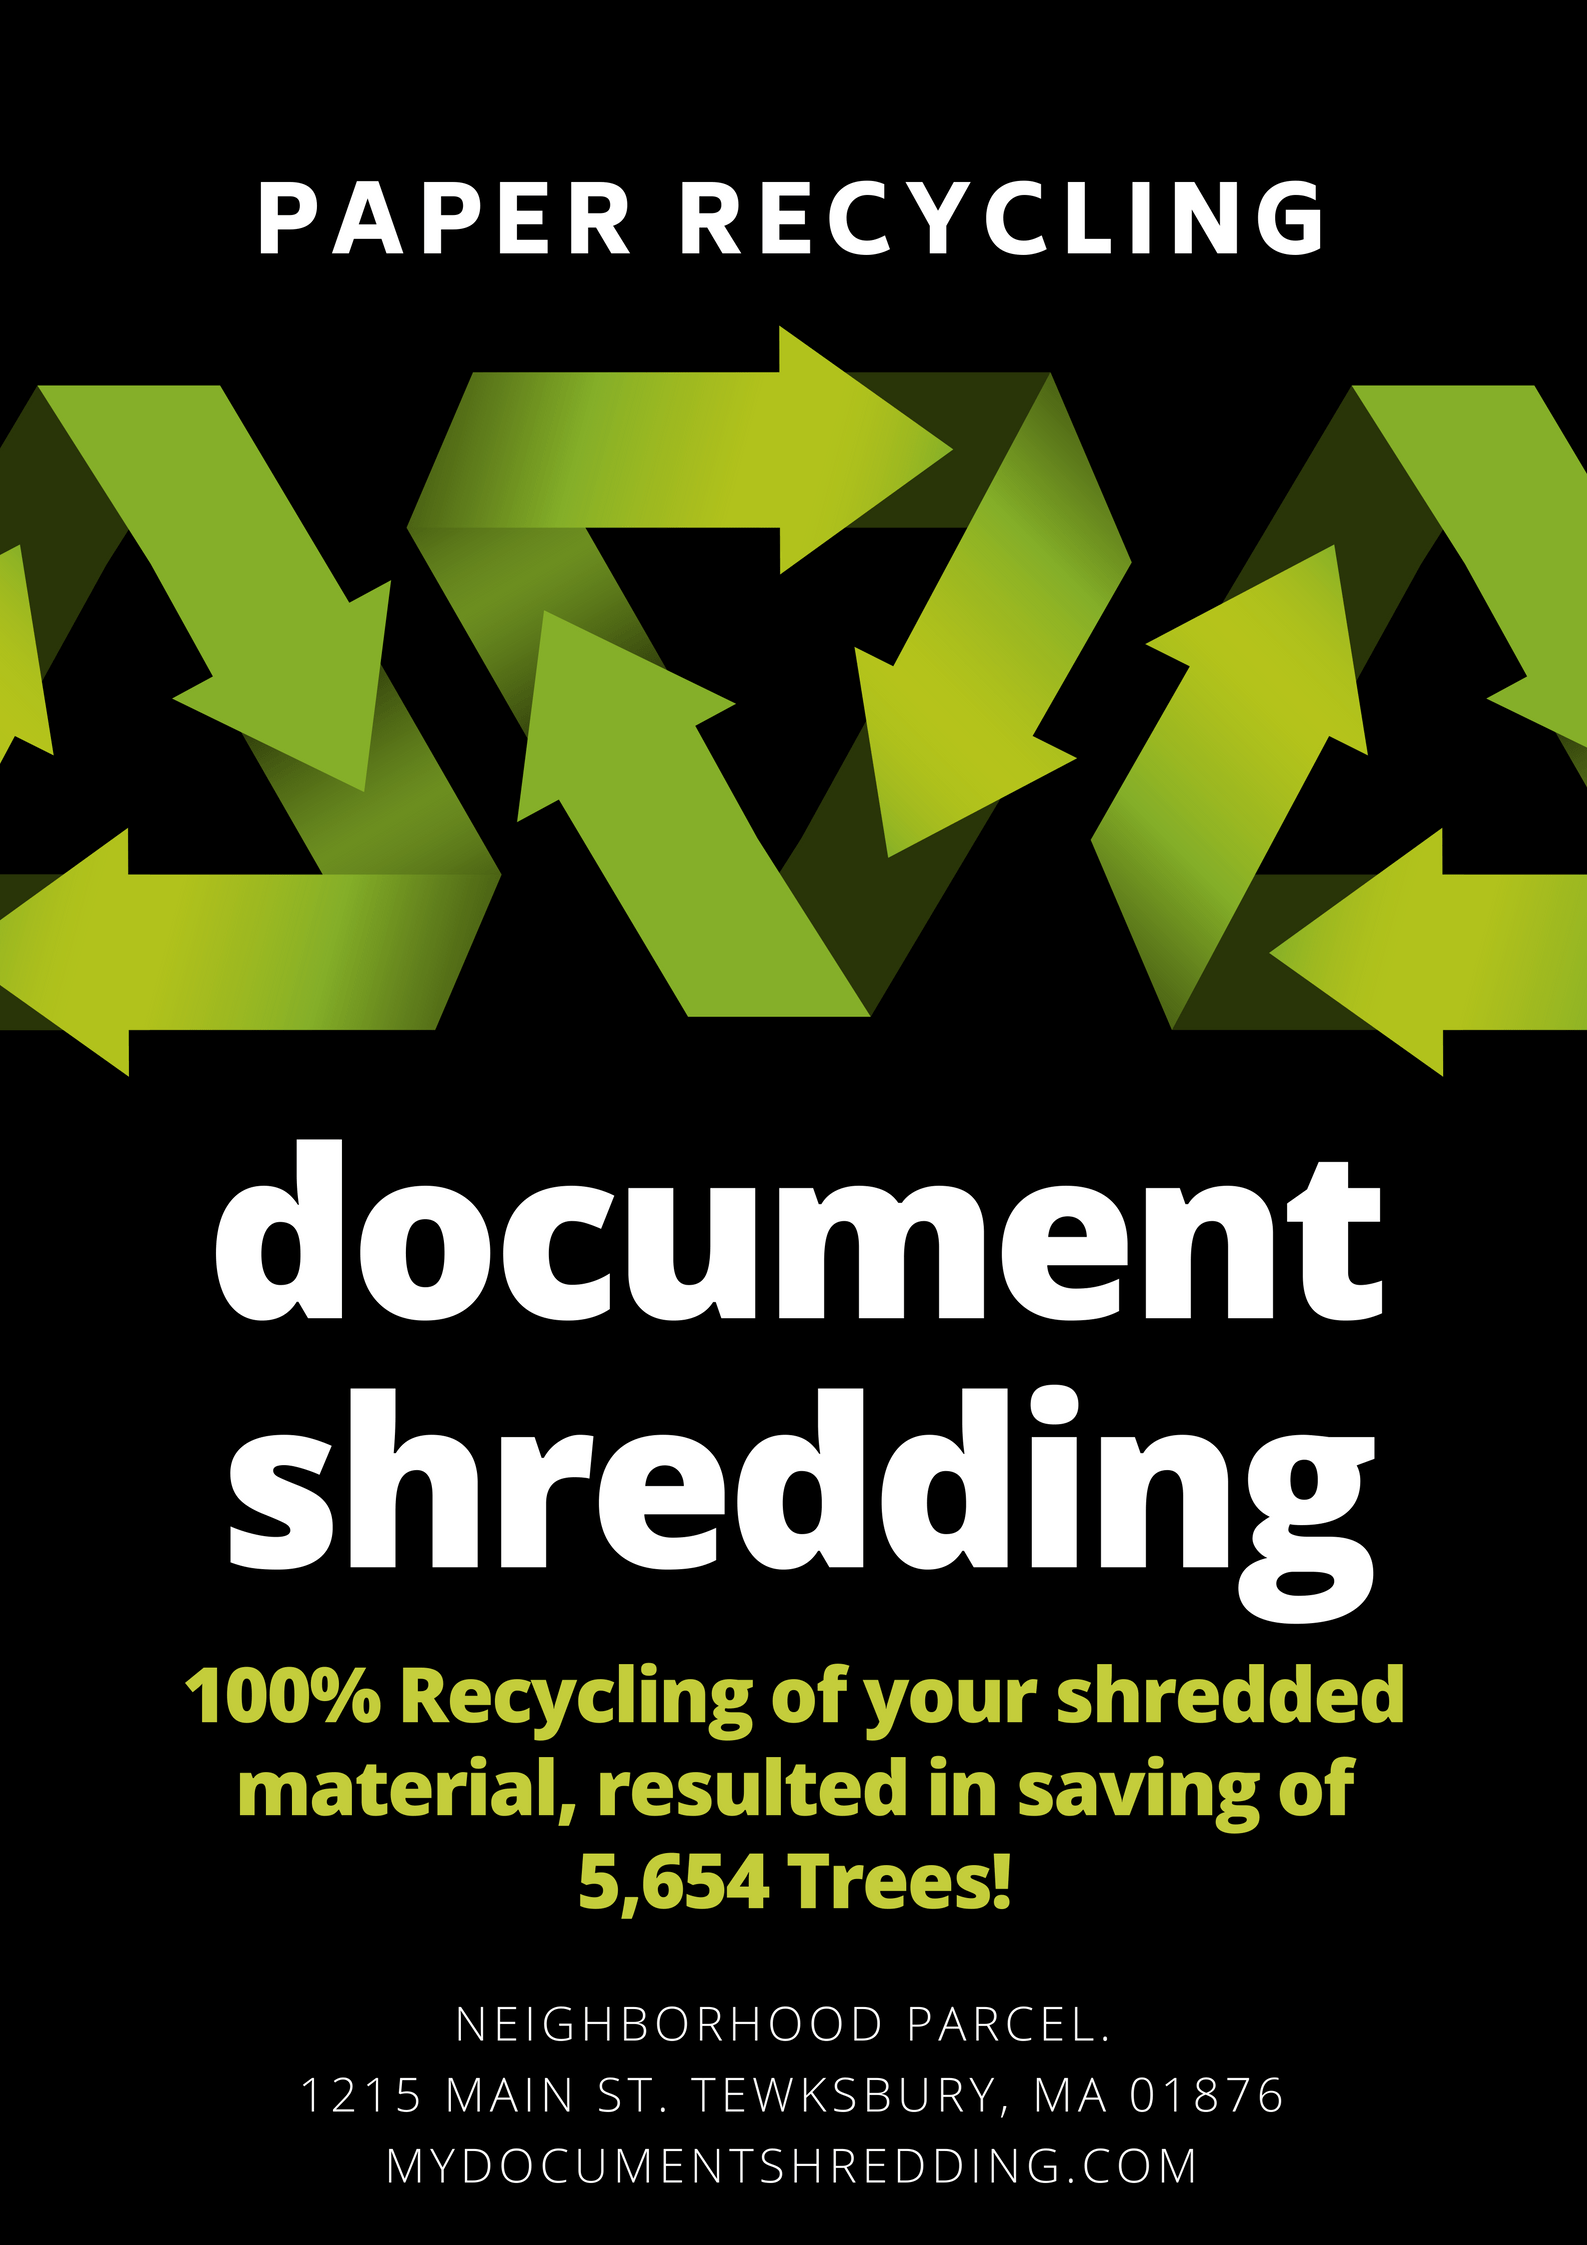 Personal document shredding service Boston MA